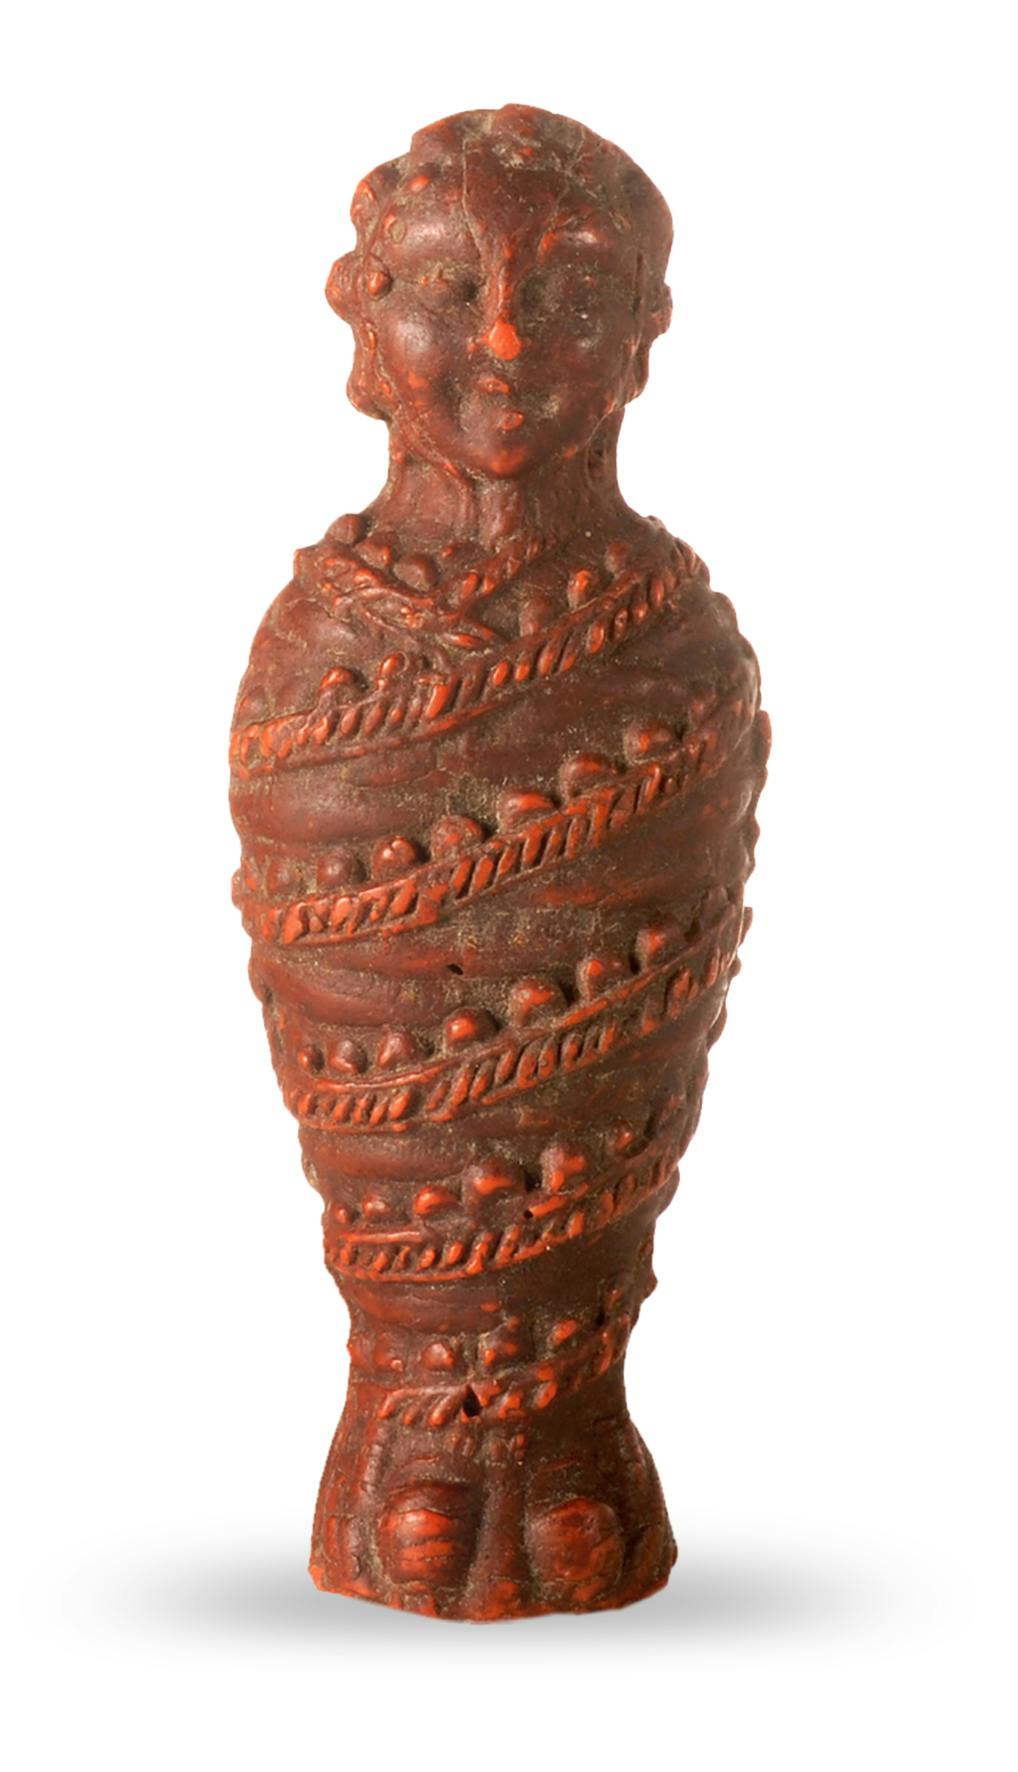 Fatschenkind aus Wachs, Votivgabe, 11.5 cm, Herkunft unbekannt, keine Angaben zur Datierung